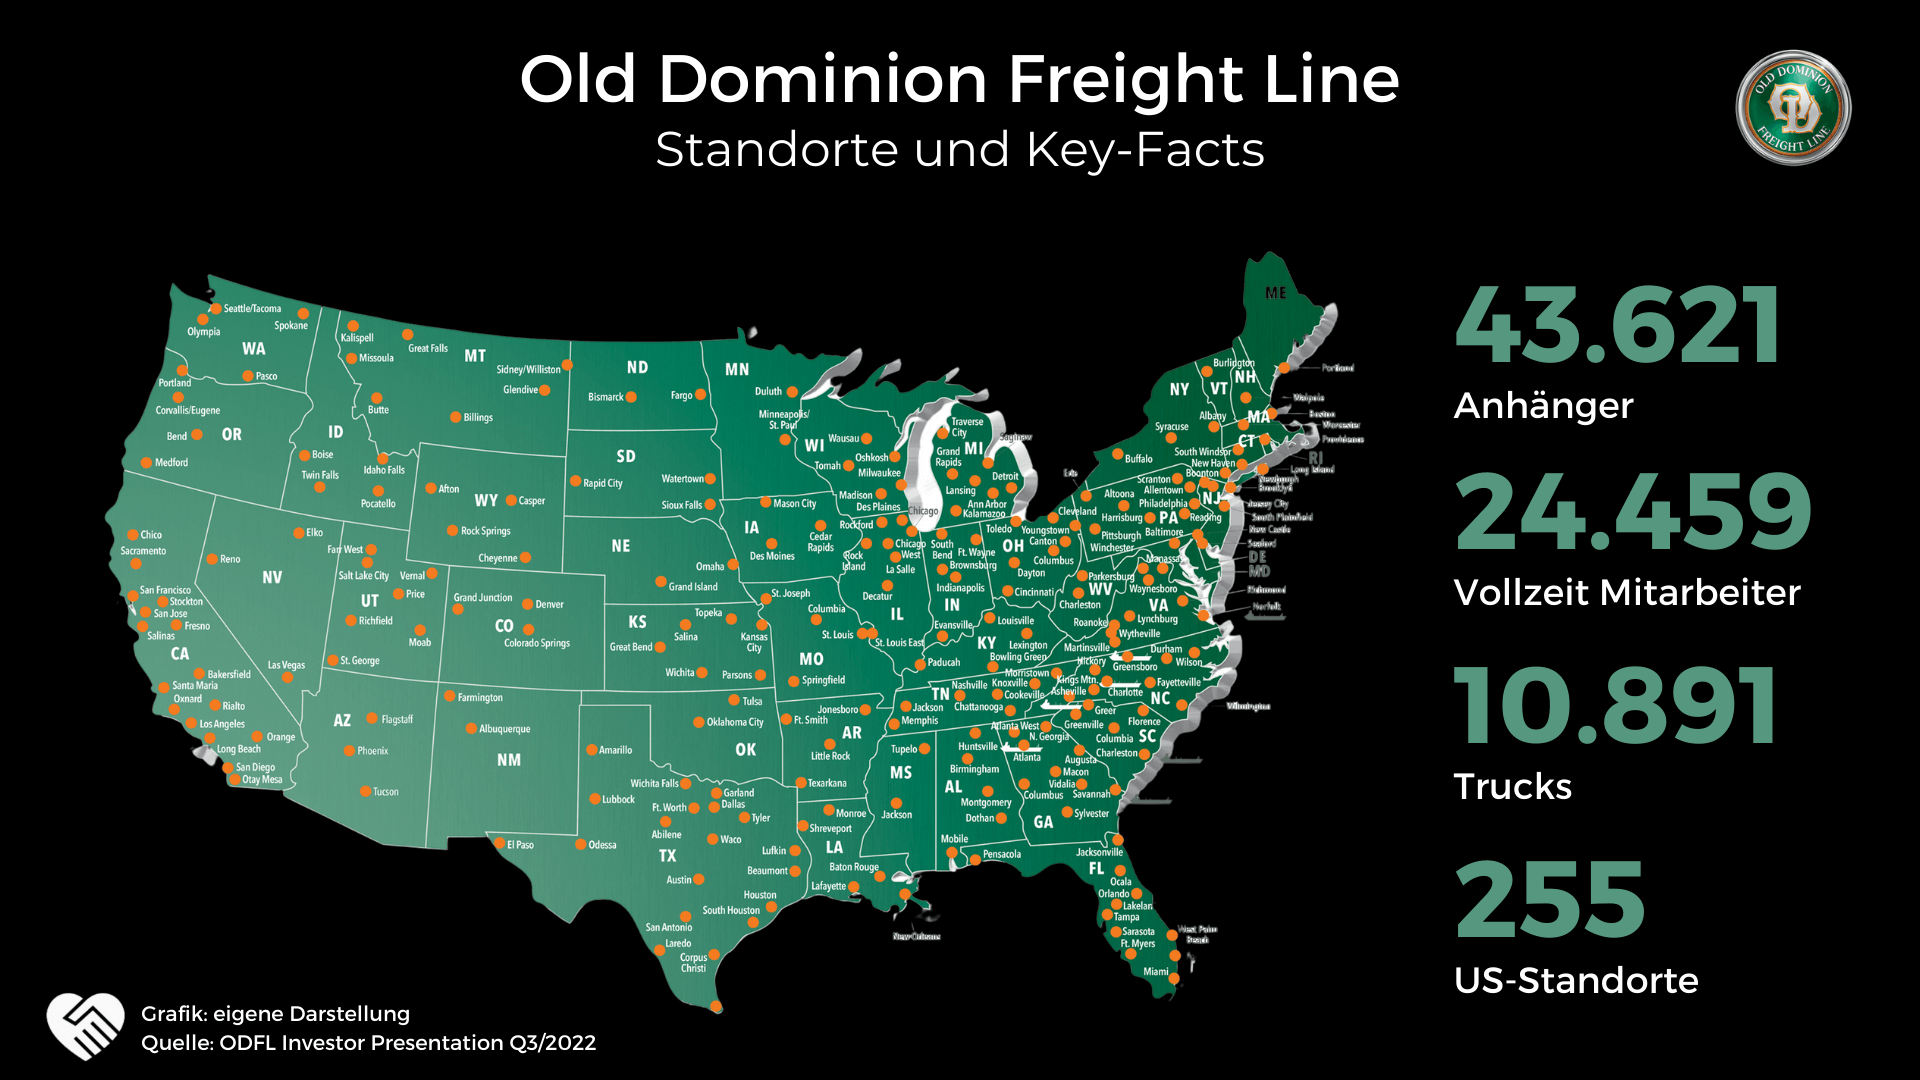 Old Dominion Freight Line Aktie Analyse - Der Beste Logistiker Nordamerikas?